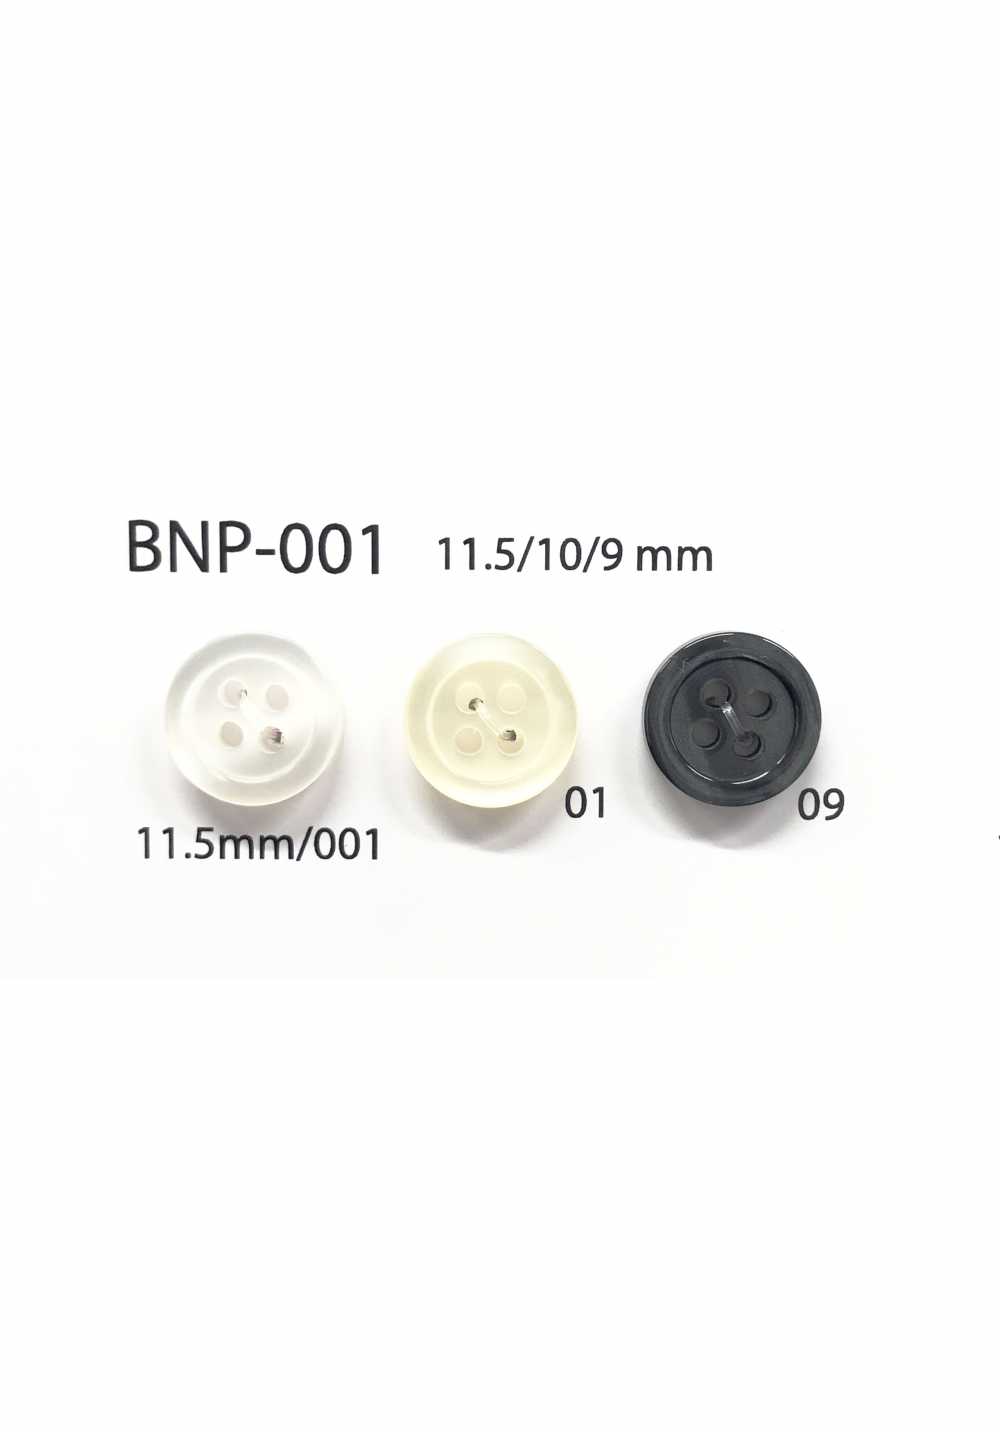 BNP-001 Botón De Biopoliéster De 4 Orificios IRIS